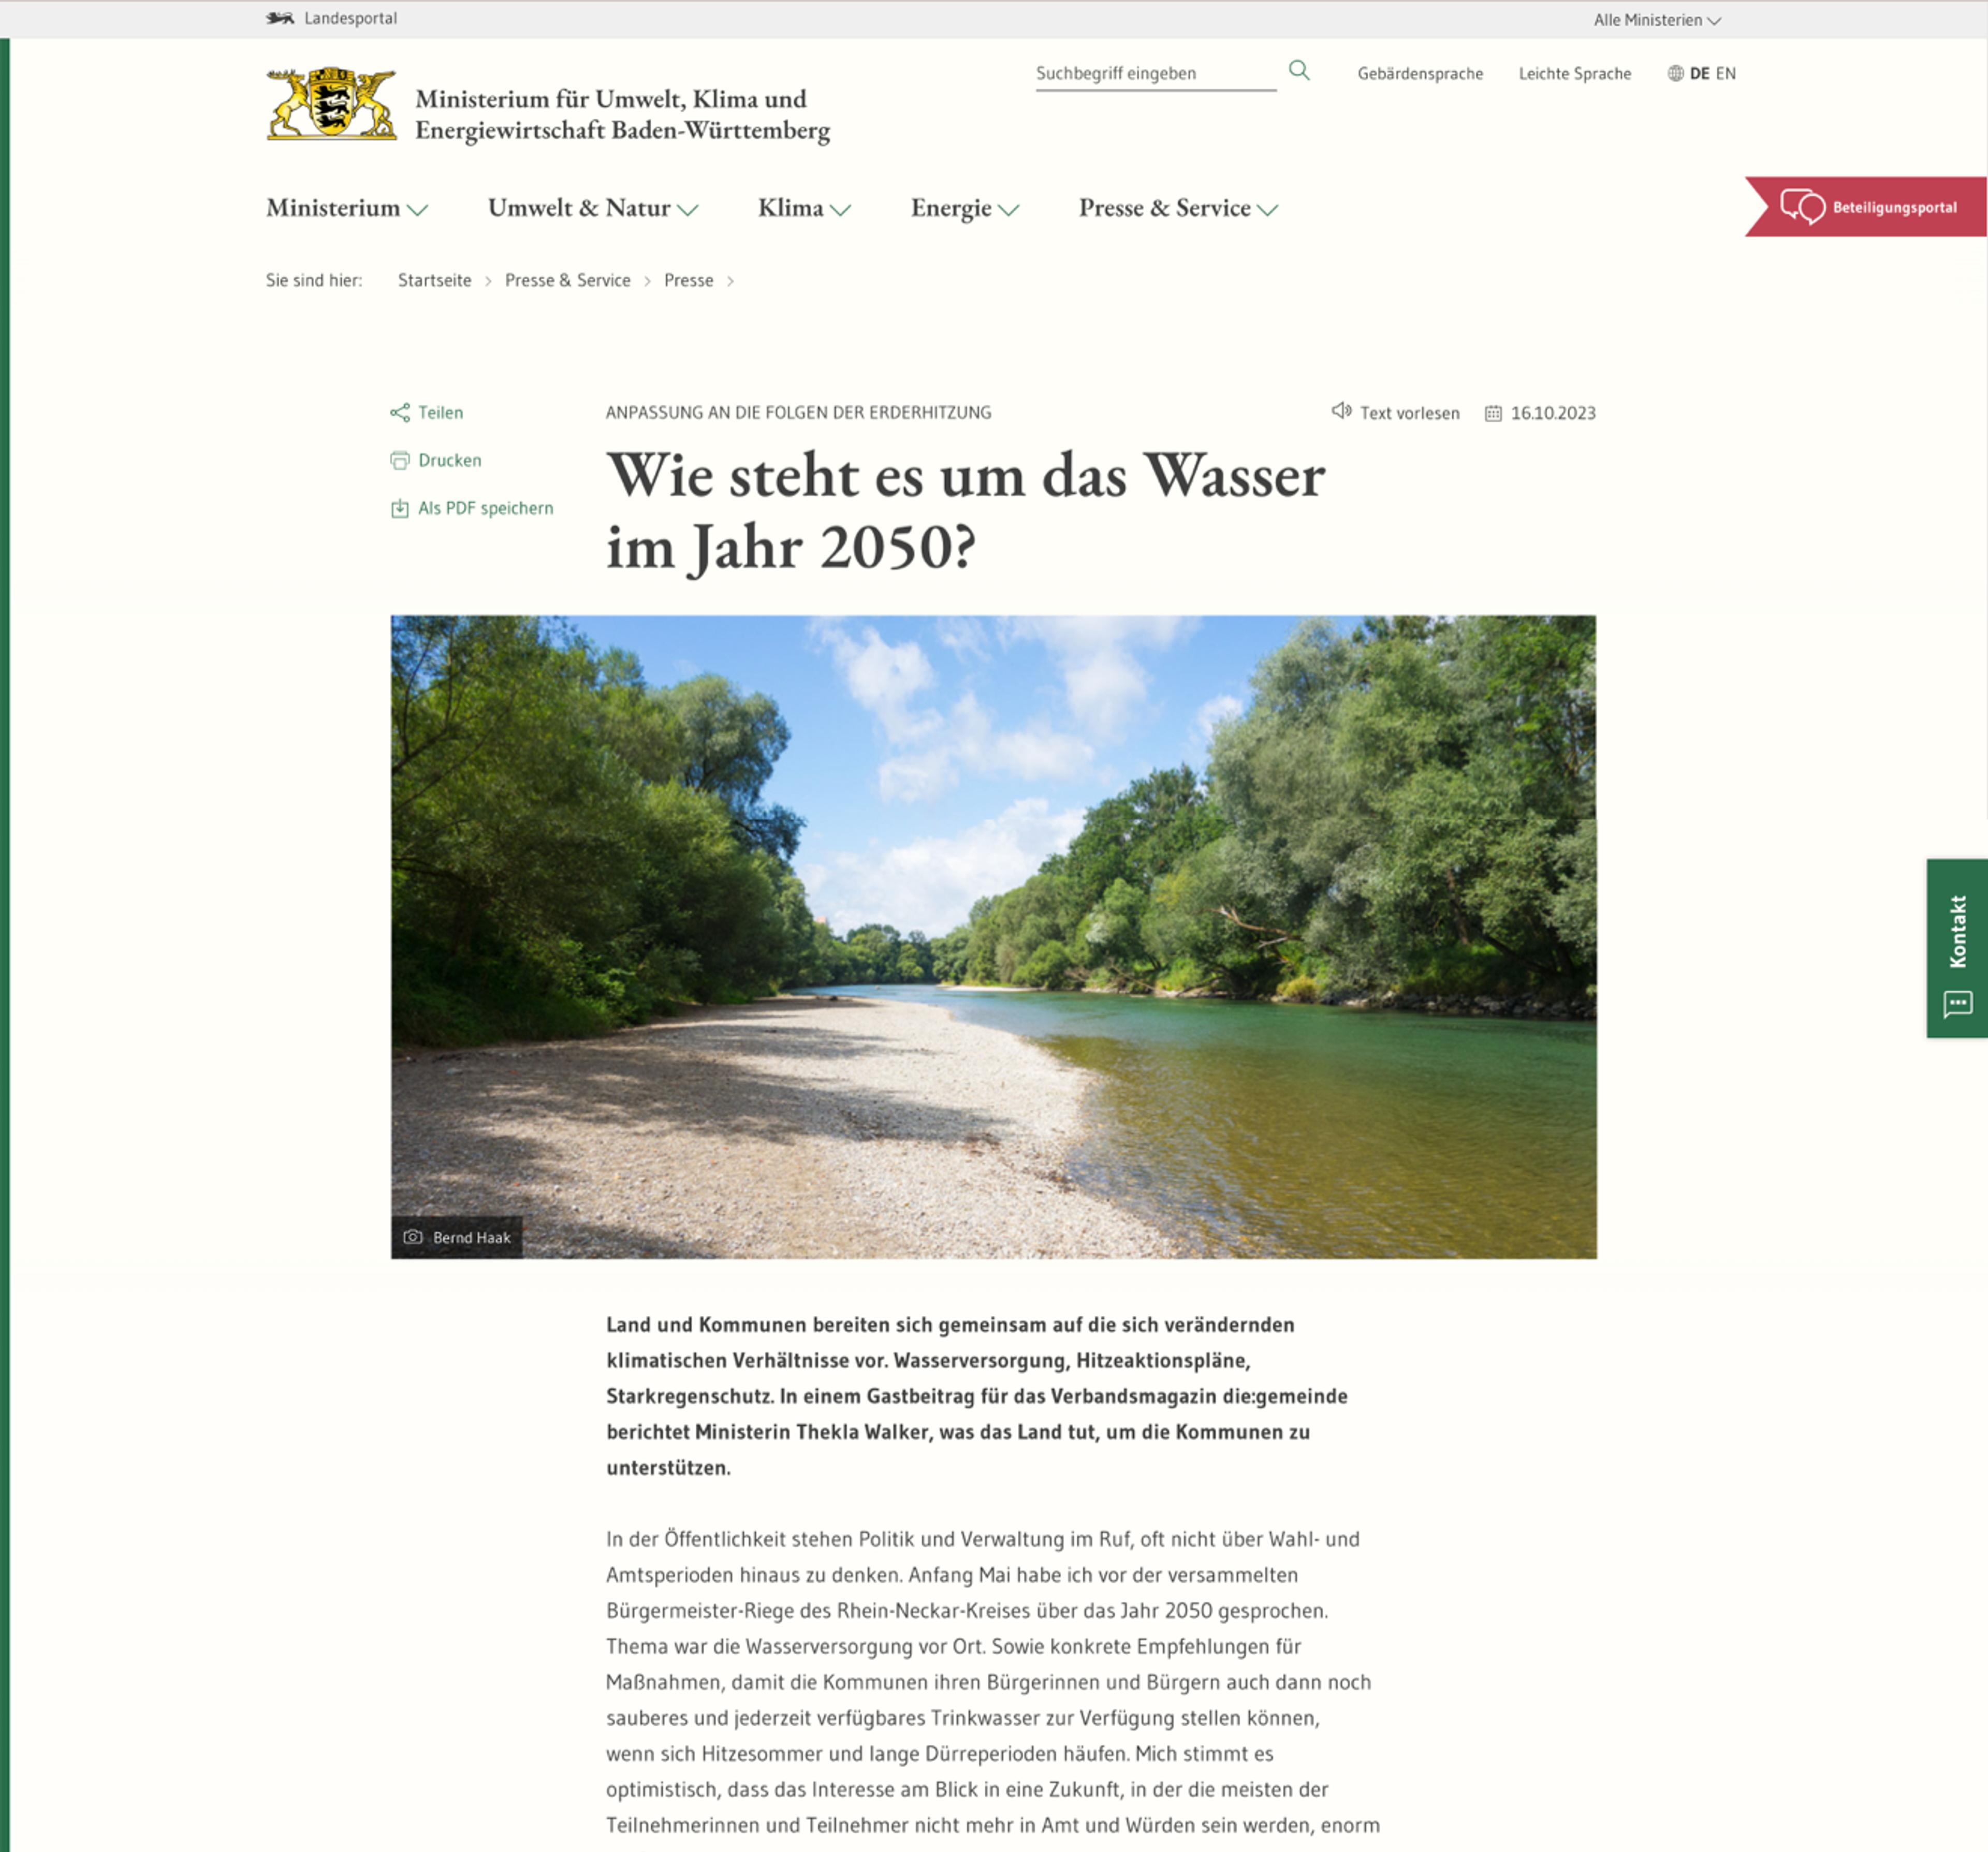 Ministerium für Umwelt, Klima und Energiewirtschaft Baden-Württemberg Article 